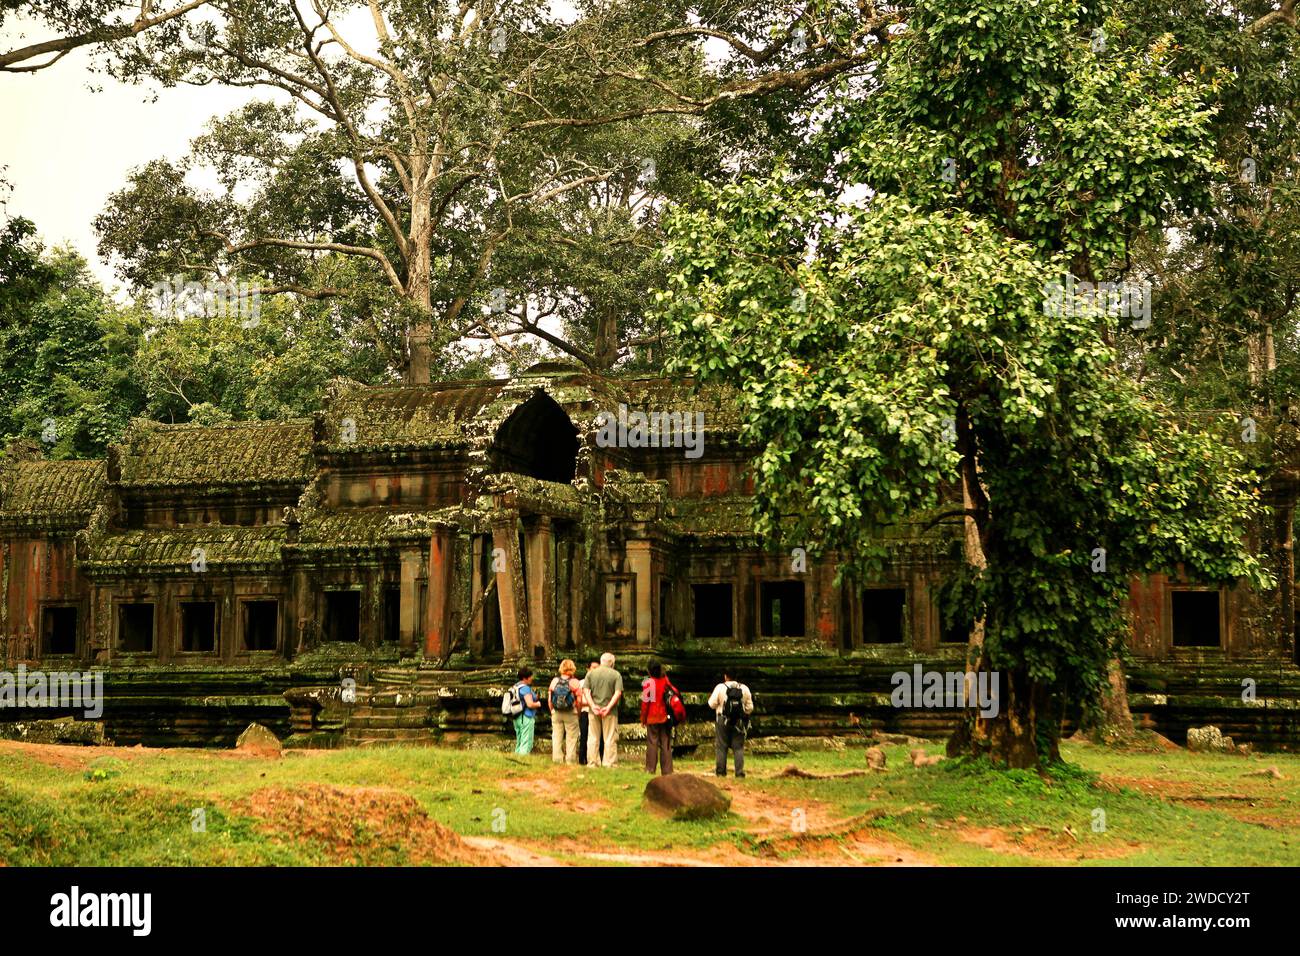 Eine Gruppe internationaler Touristen achtet auf einen ruinierten, nicht identifizierten „Satelliten“-Tempel in der Nähe von Angkor Wat in Siem Reap, Kambodscha. Angkor ist ein erfolgreiches Beispiel für eine langjährige internationale Zusammenarbeit bei der Bewahrung wichtiger Kulturgüter, so die UNESCO in ihrem Bericht vom Juni 2022. Seit der Aufnahme Angkor Wats in die UNESCO-Liste des Weltkulturerbes im Jahr 1992 wurden dreißig Länder und eine Ad-hoc-Expertengruppe für Wissenschafts-, Restaurierungs- und Erhaltungsvorhaben nach einem innovativen Ansatz zusammengeführt, der Schutzmaßnahmen eng mit nachhaltiger... Stockfoto